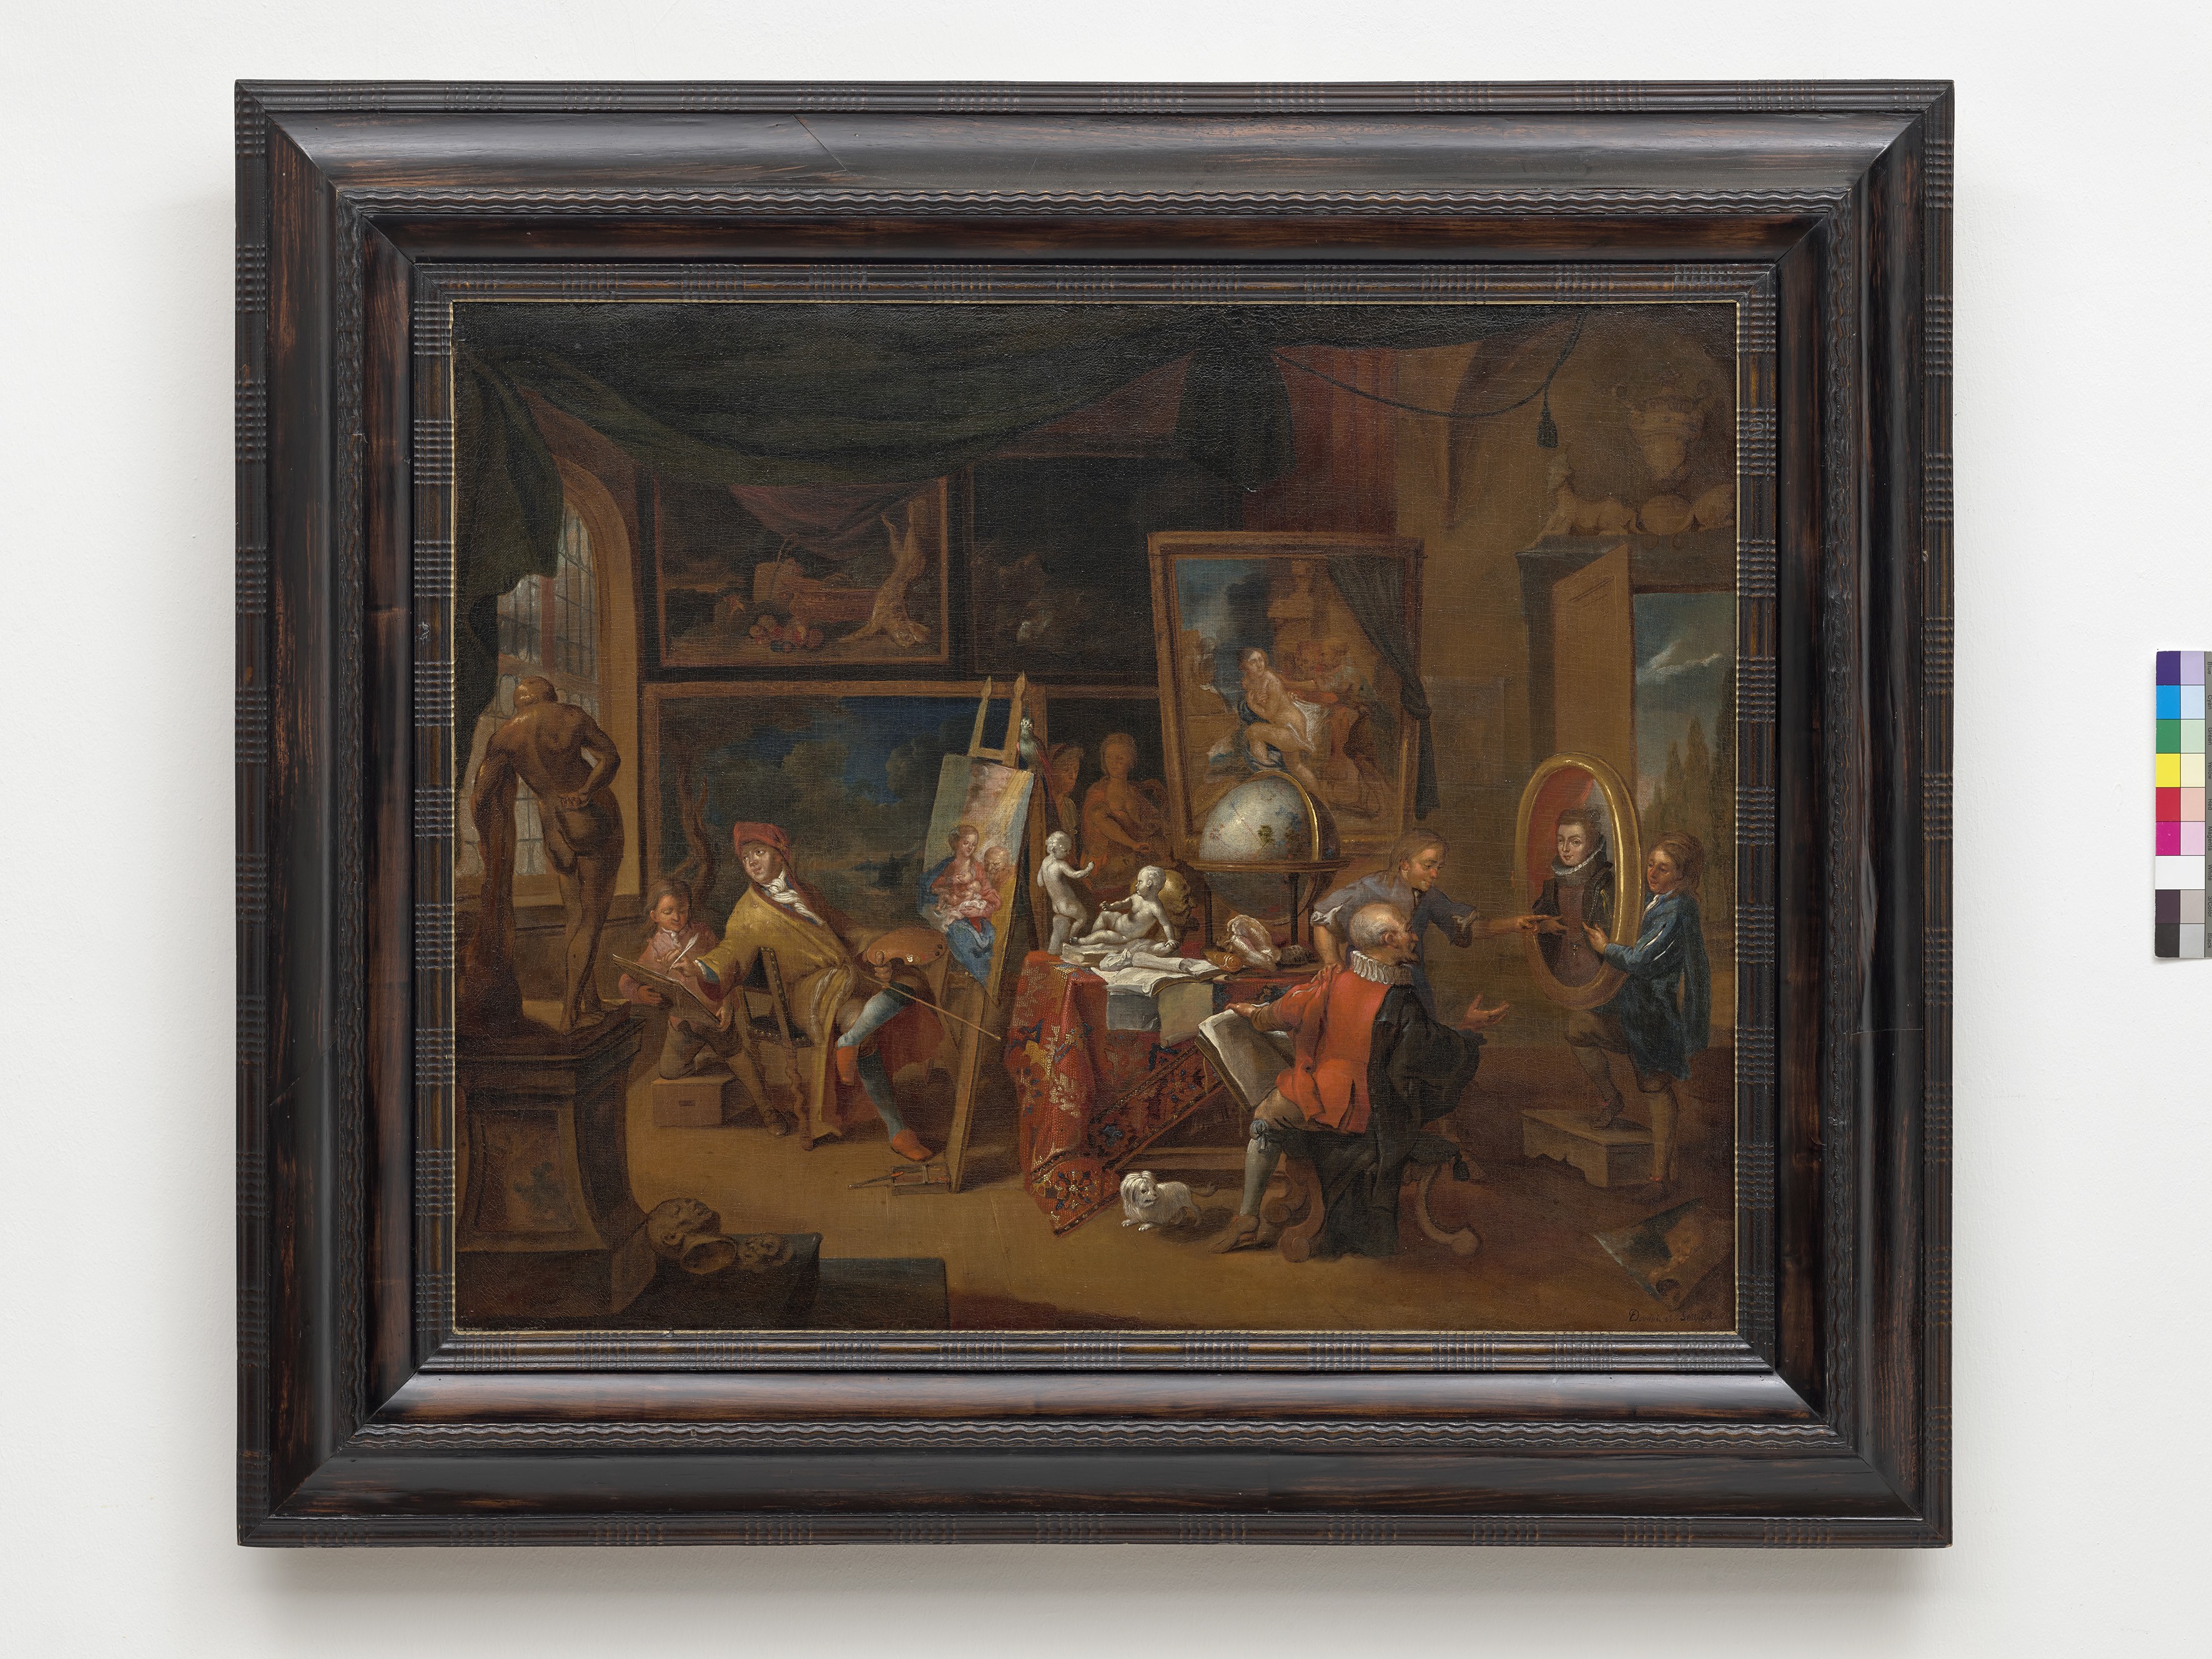 Dominicus Smout (vor 1671-nach1733), Das Atelier des Malers, um 1700 (Städtisches Museum Schloss Rheydt CC BY)